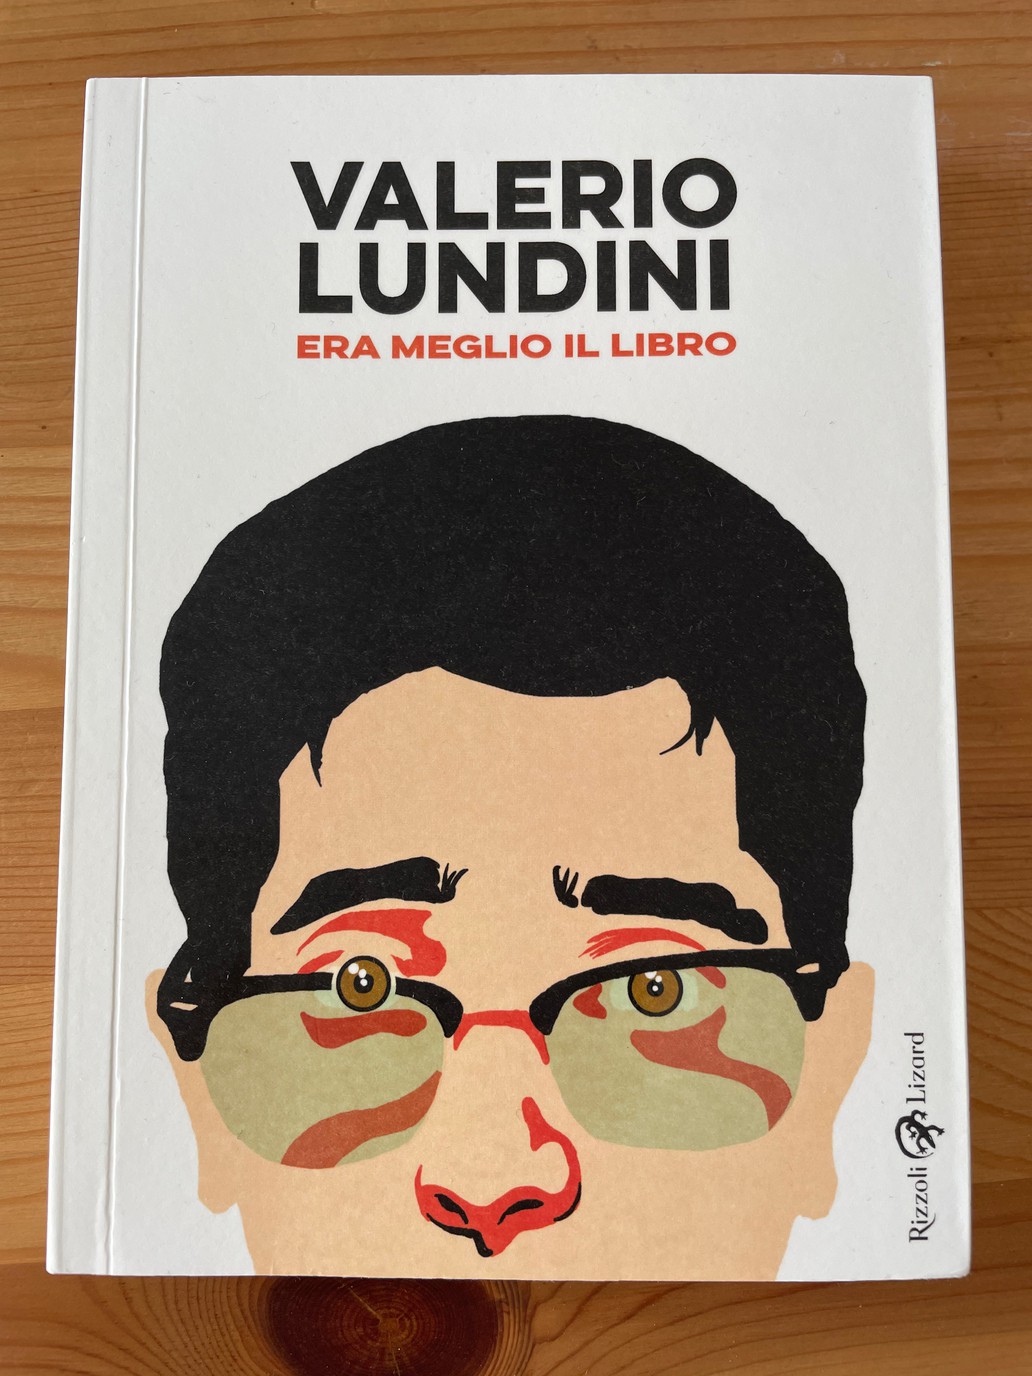 Copertura del libro di Valerio Lundini.